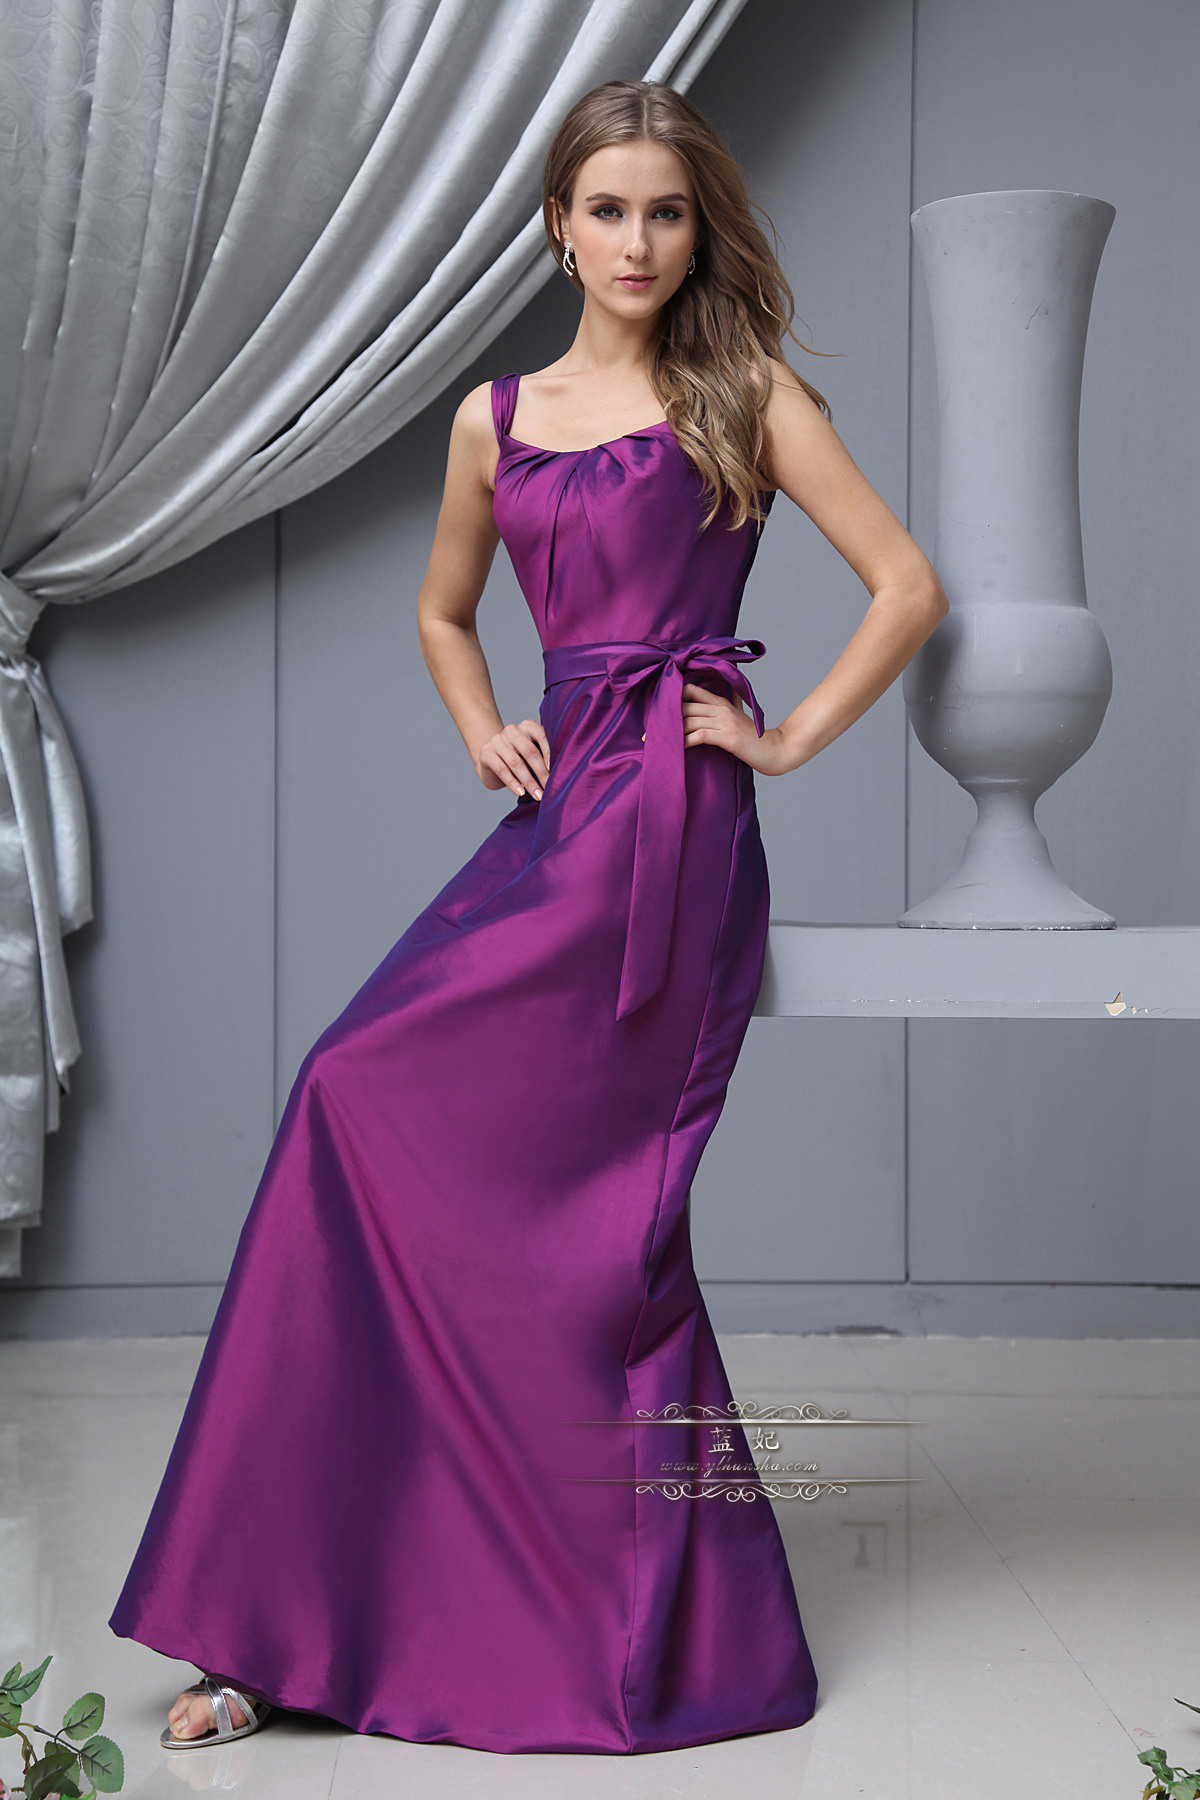 婚纱礼服 新款2013显瘦双肩礼服长款 敬酒晚礼服紫色 量身定制